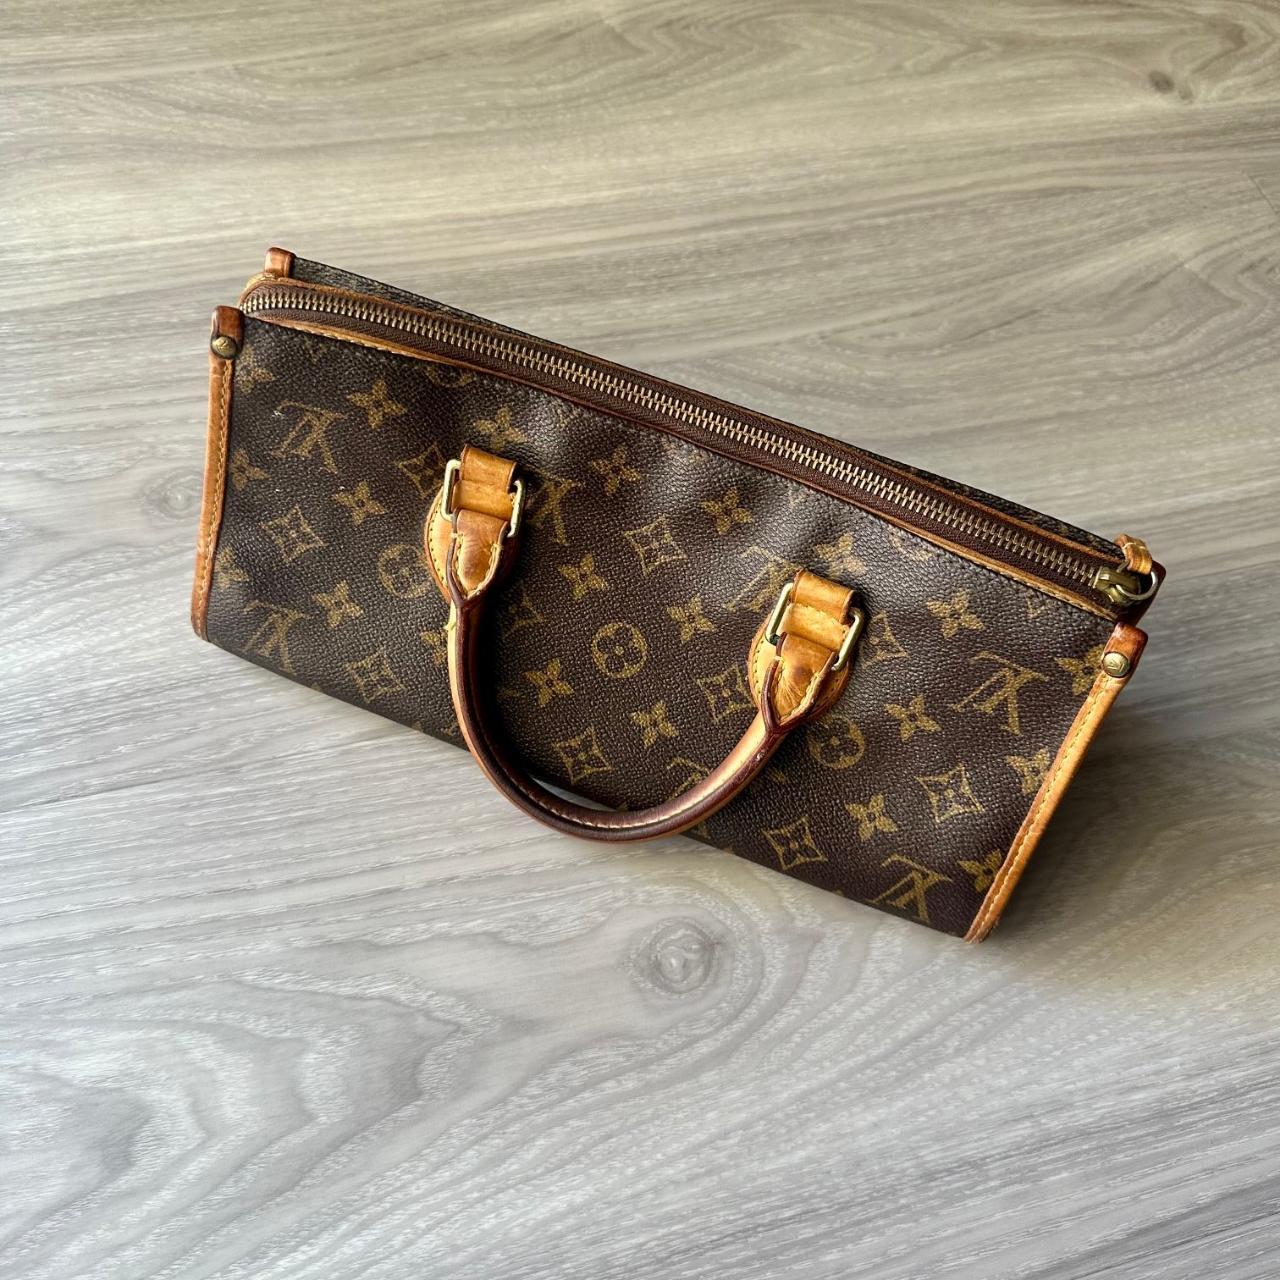 Louis Vuitton pochette valmy monogram bag Brand new - Depop